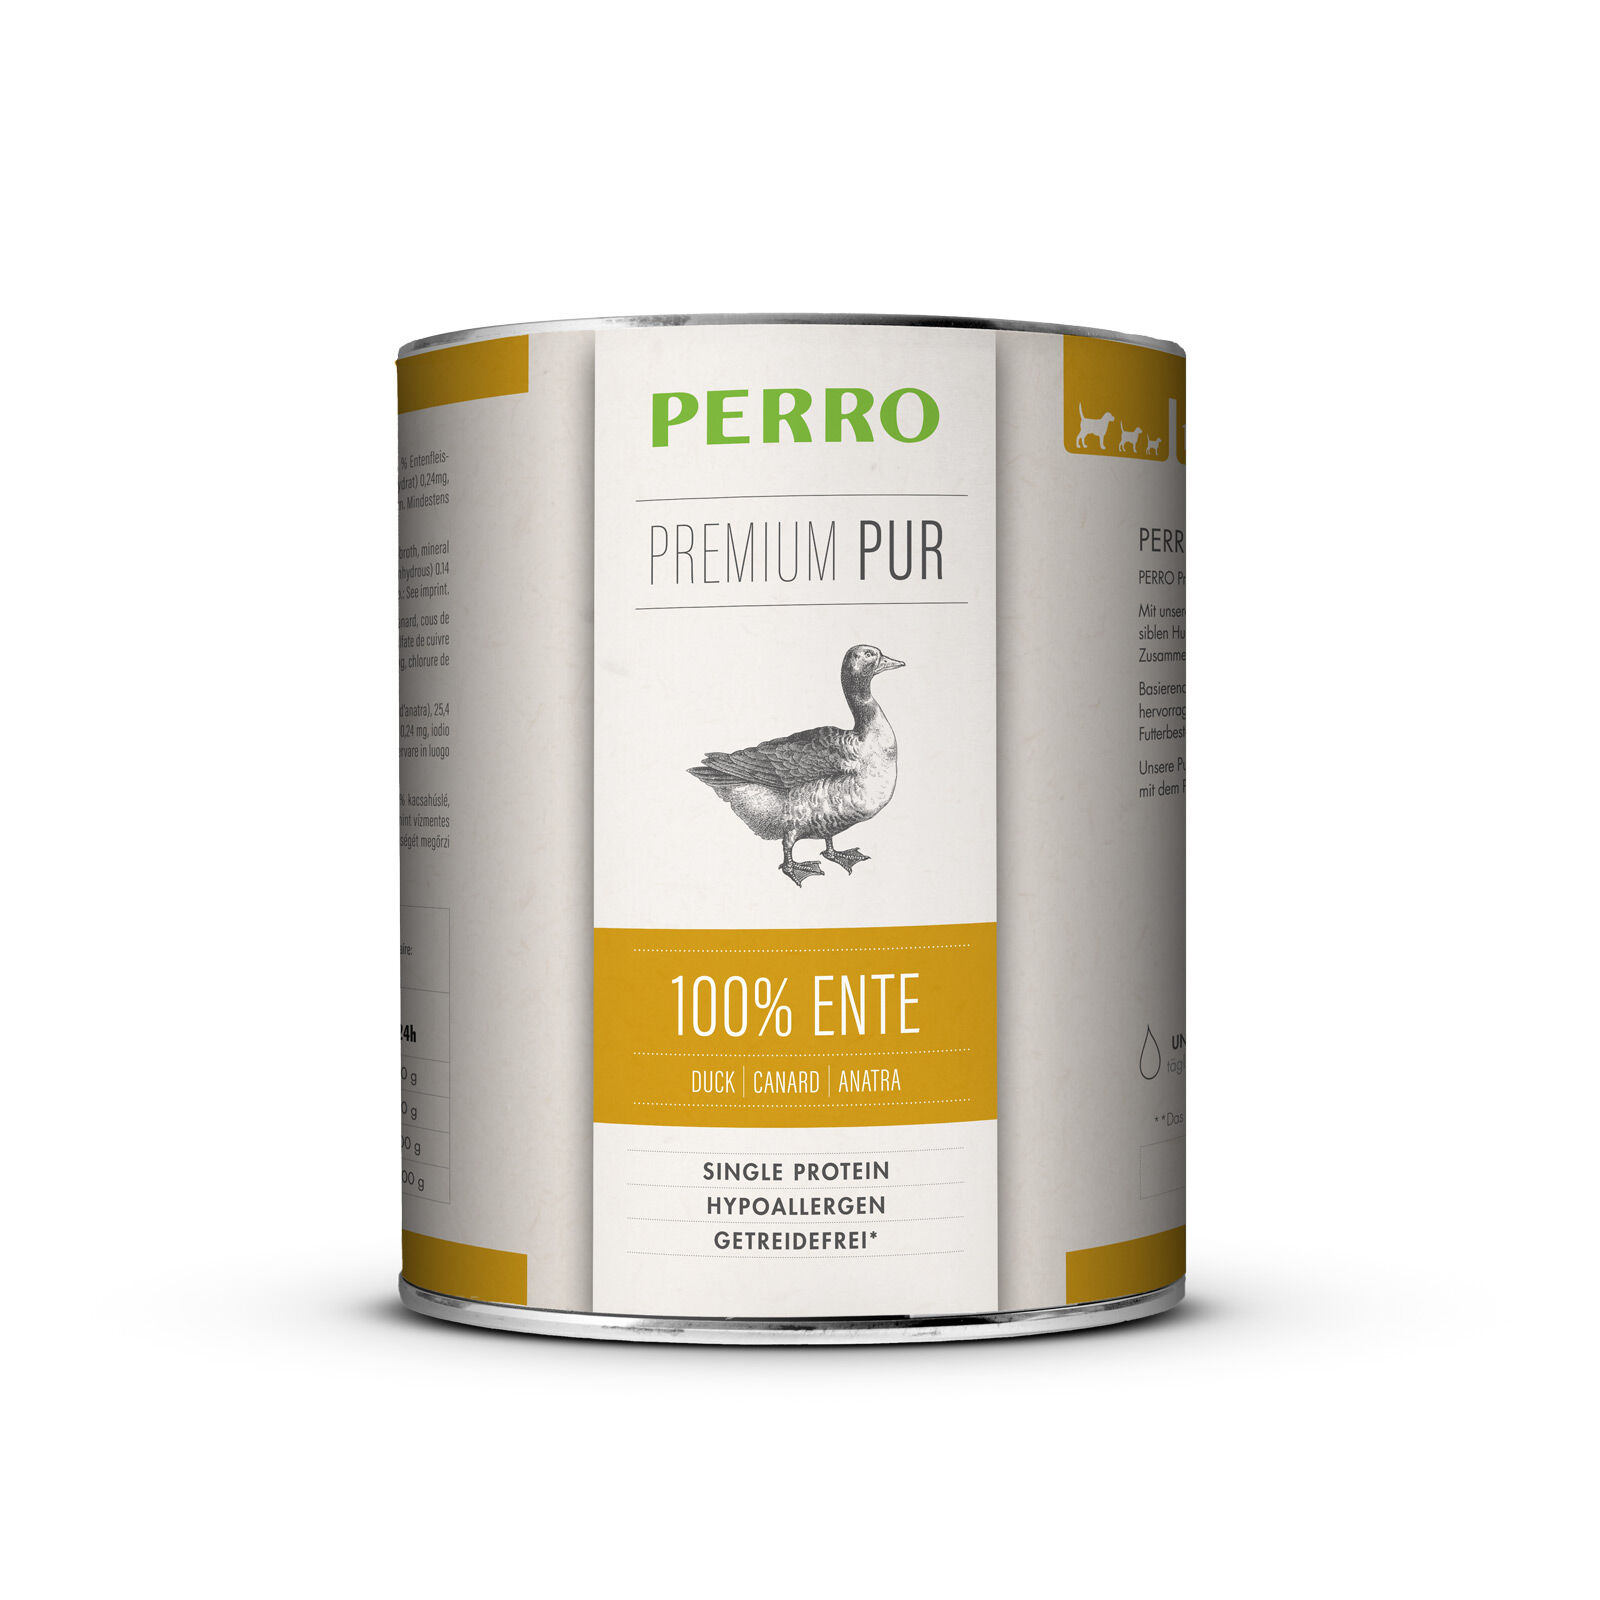 PERRO Premium Pur Ente